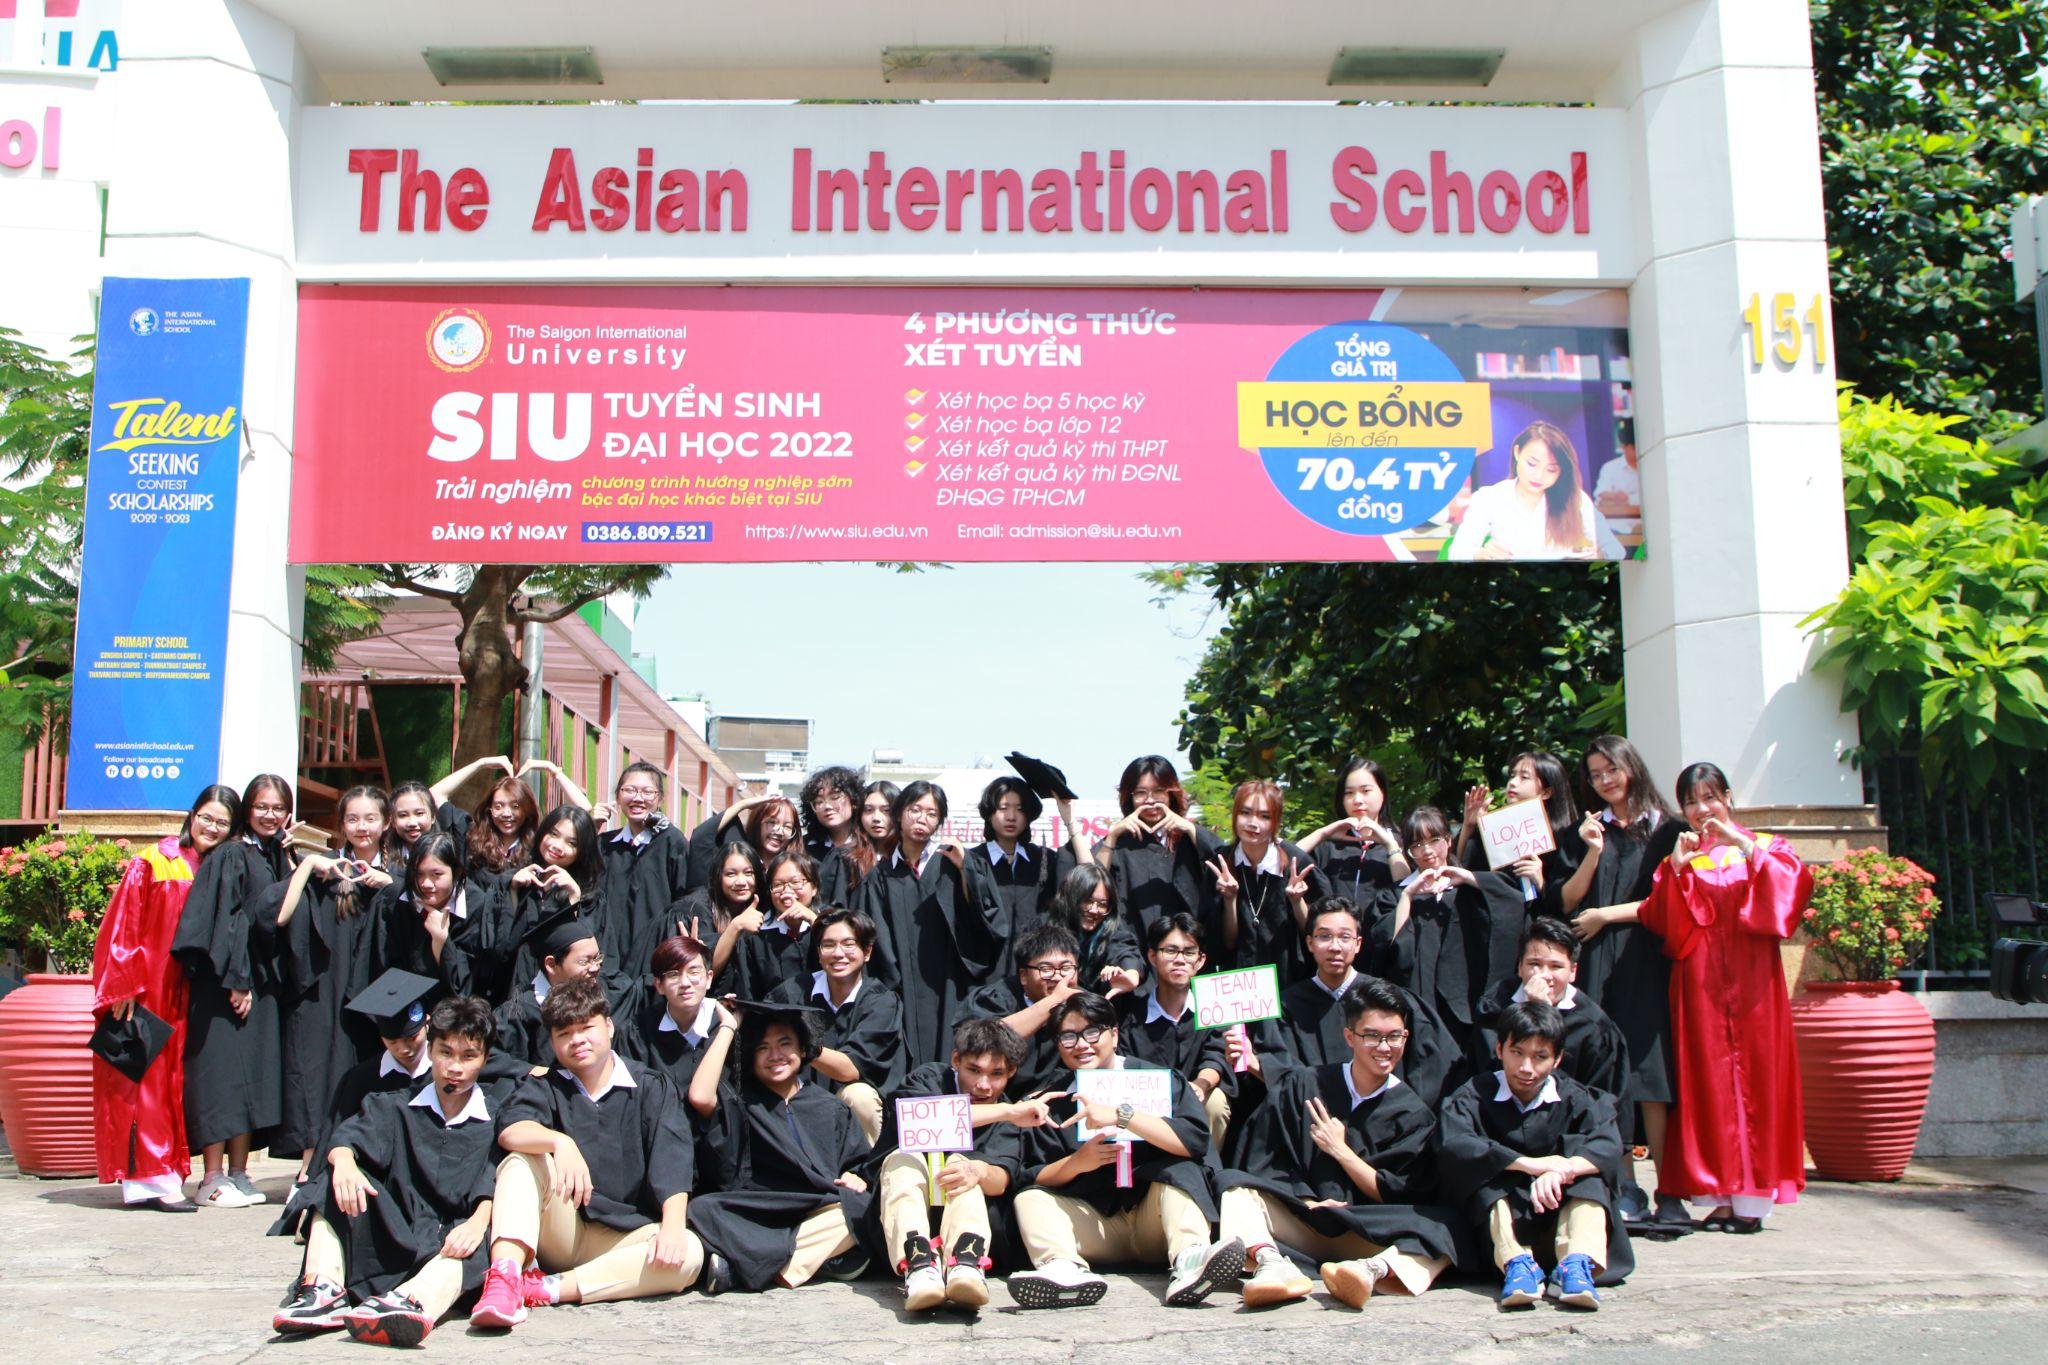 Cùng học sinh Asian School lưu giữ thanh xuân tươi đẹp 